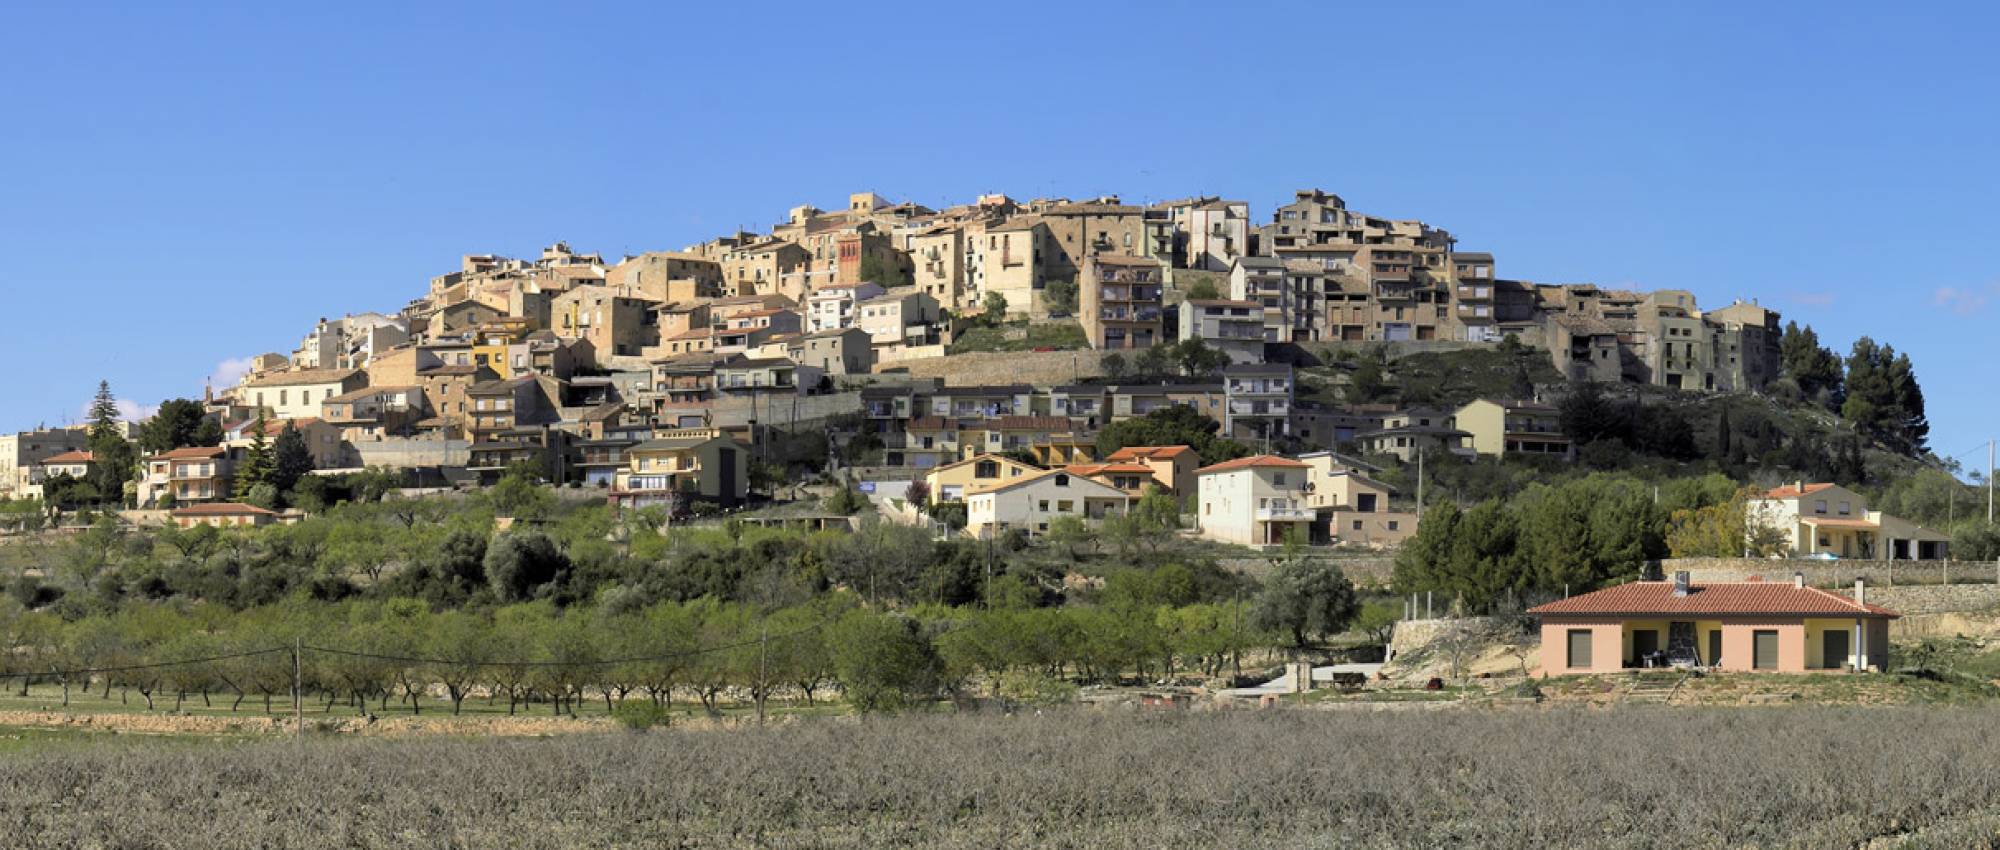 Vista d'Horta de Sant Joan. CC BY-SA 3.0 -  Hans Hillewaert / Wikimedia Commons